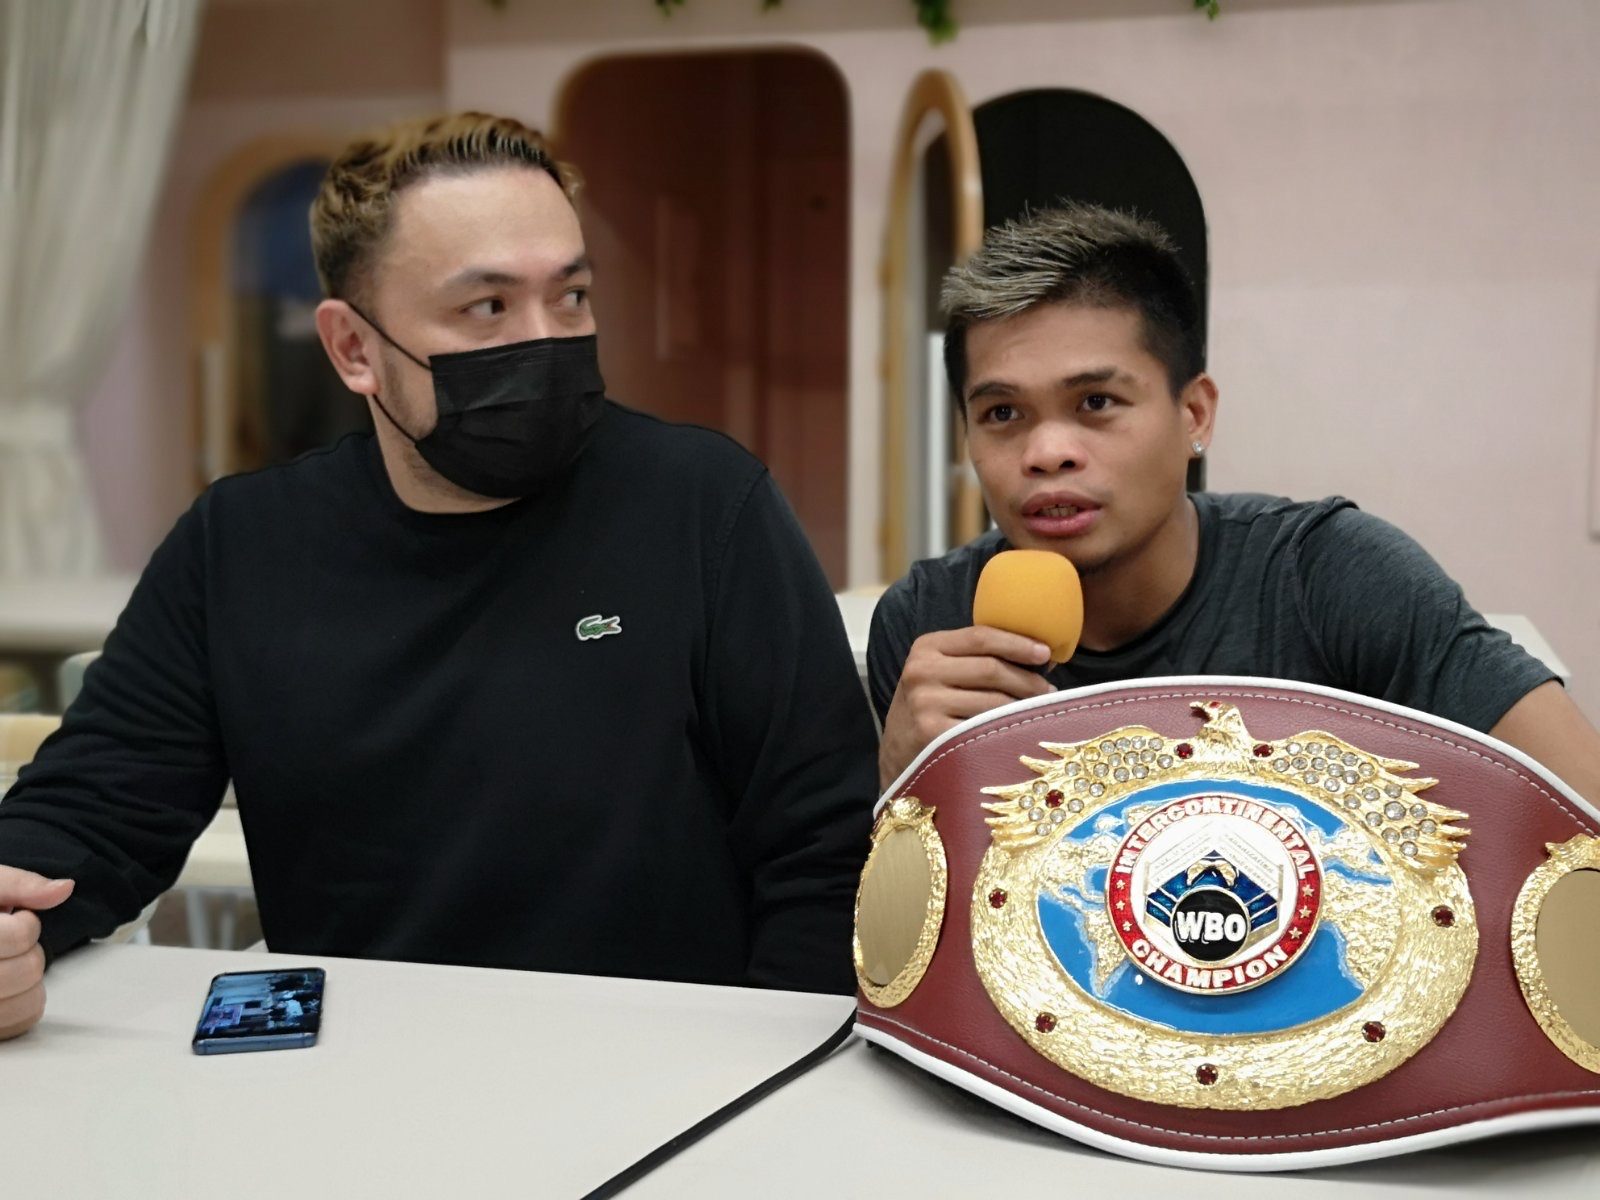 Sultan prefers to fight Inoue over fellow Filipino champs